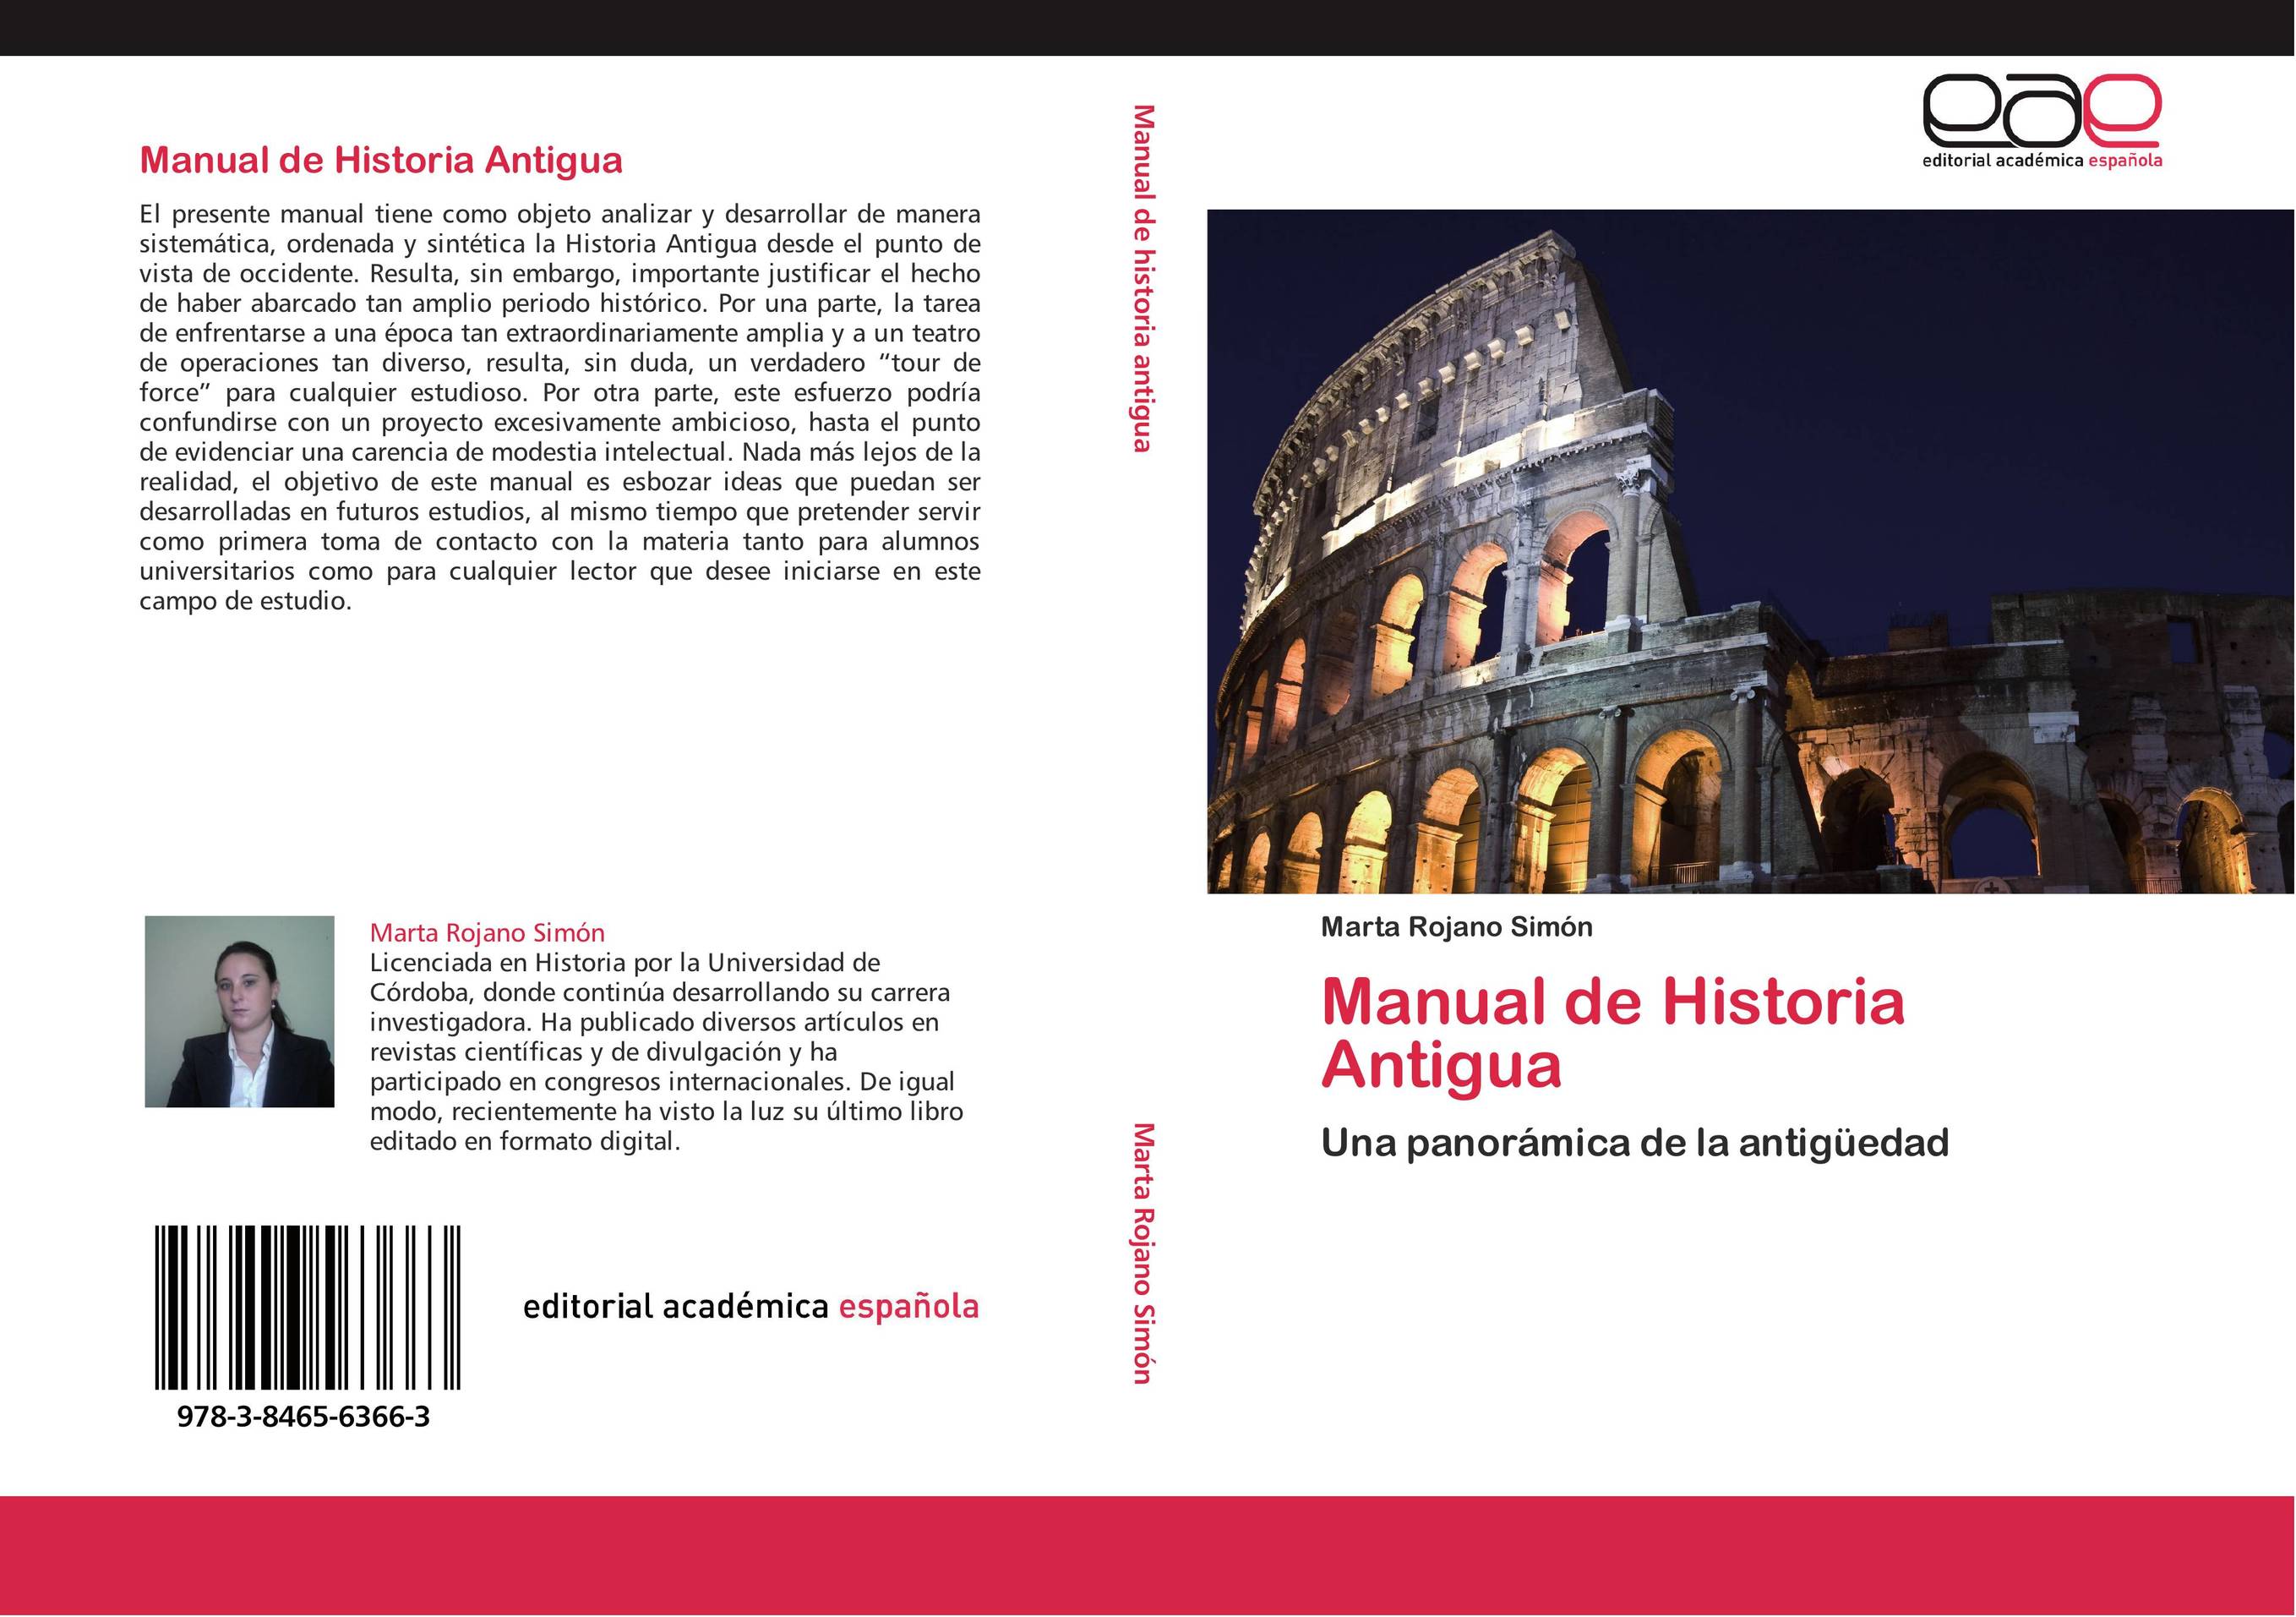 Manual de Historia Antigua